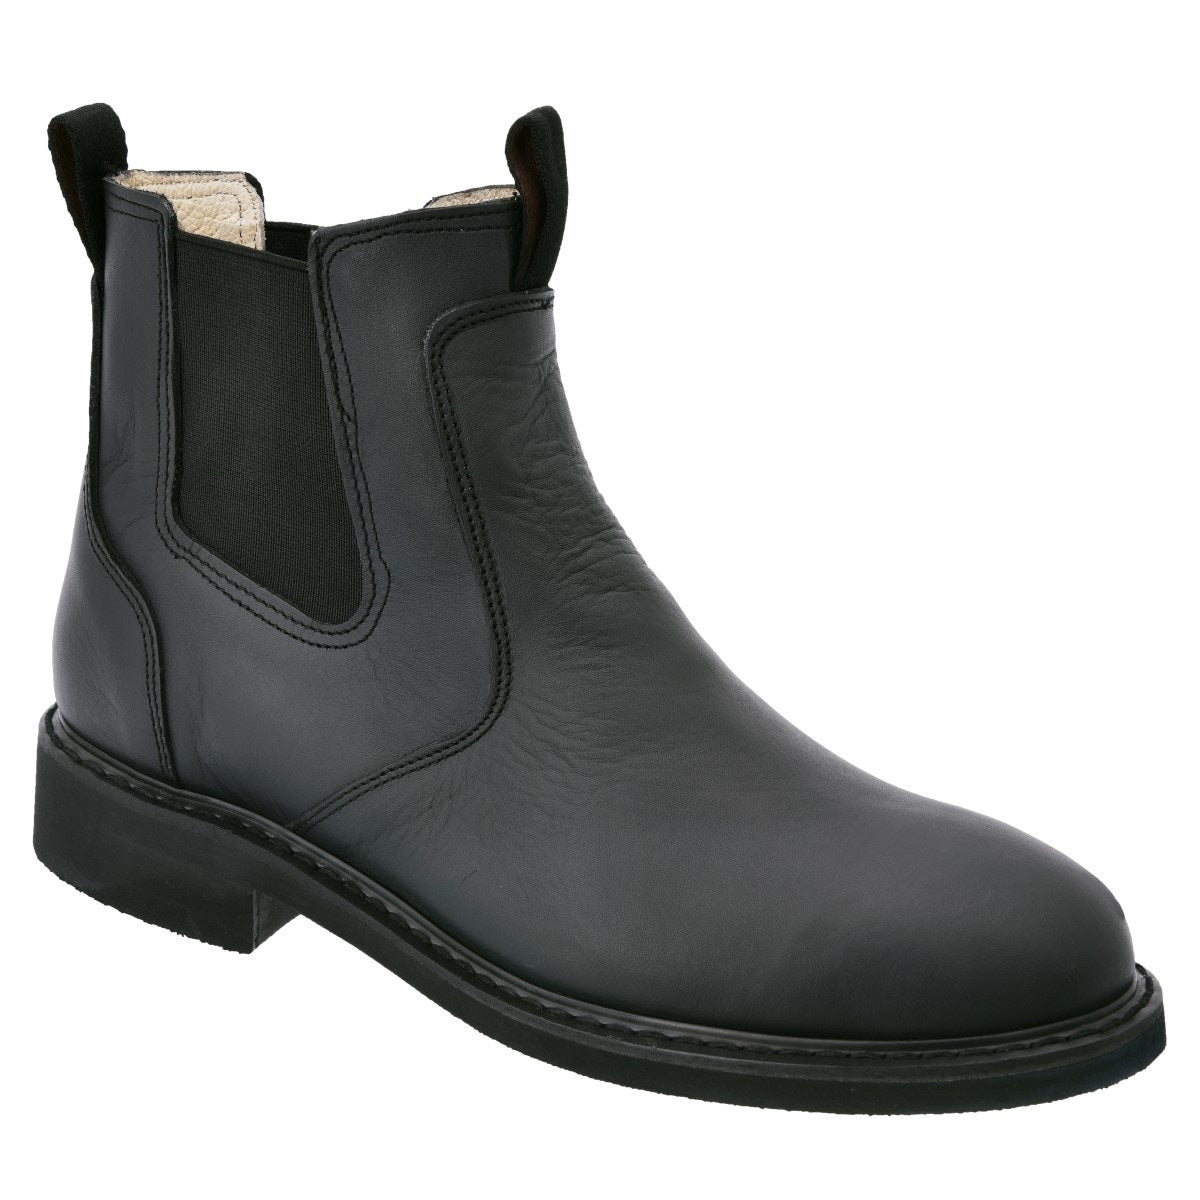 Botas de Trabajo TM-WD0484-430 Black - Work Boots